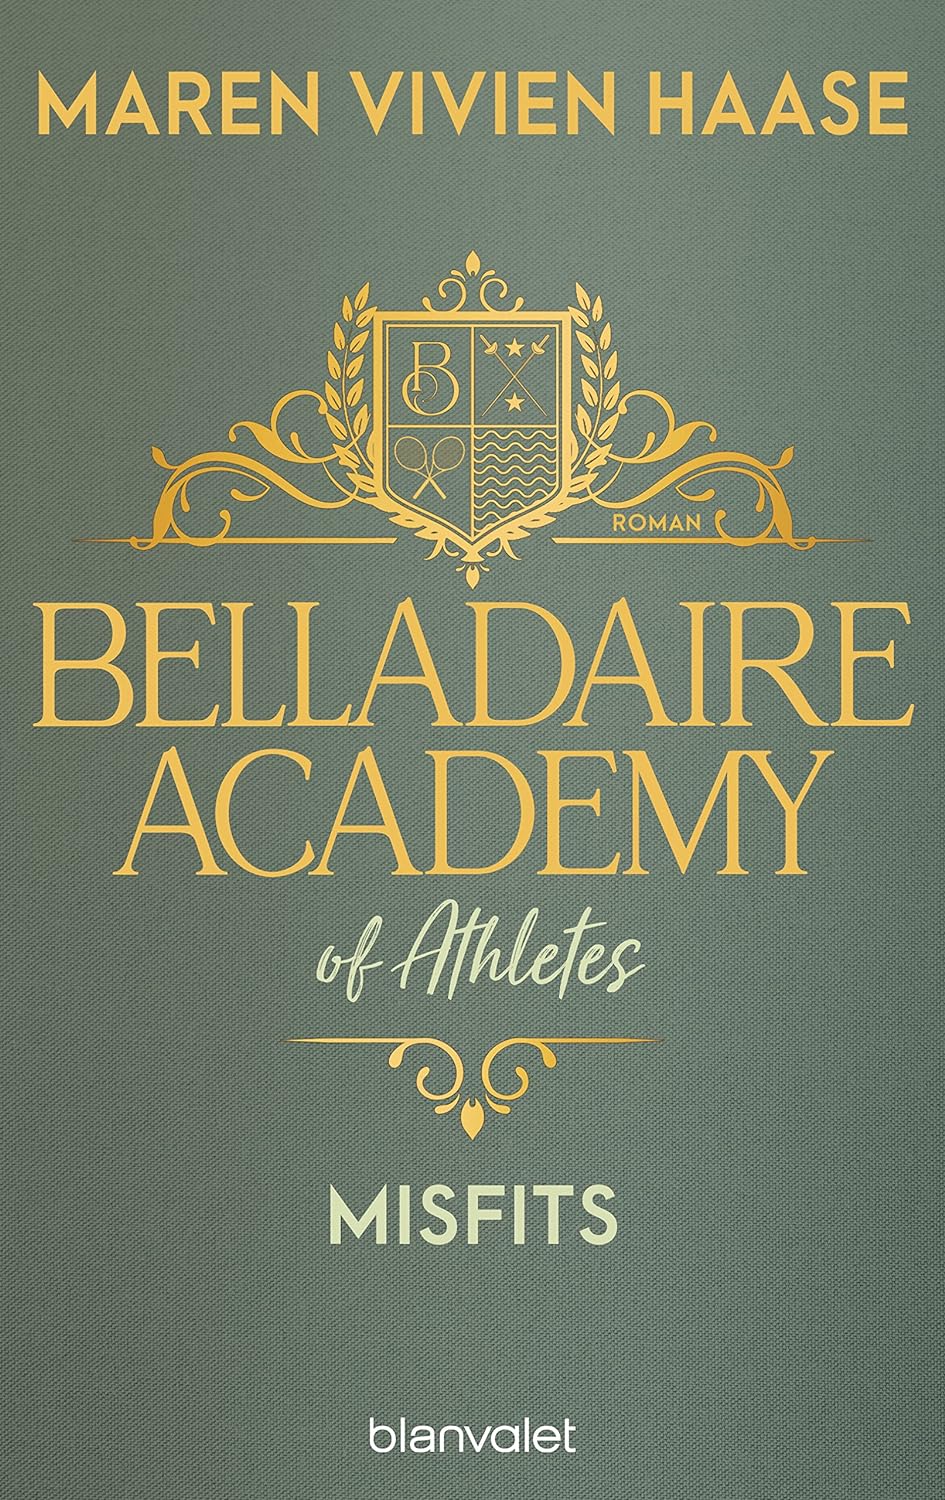 Maren Vivien Haase - Belladaire Academy